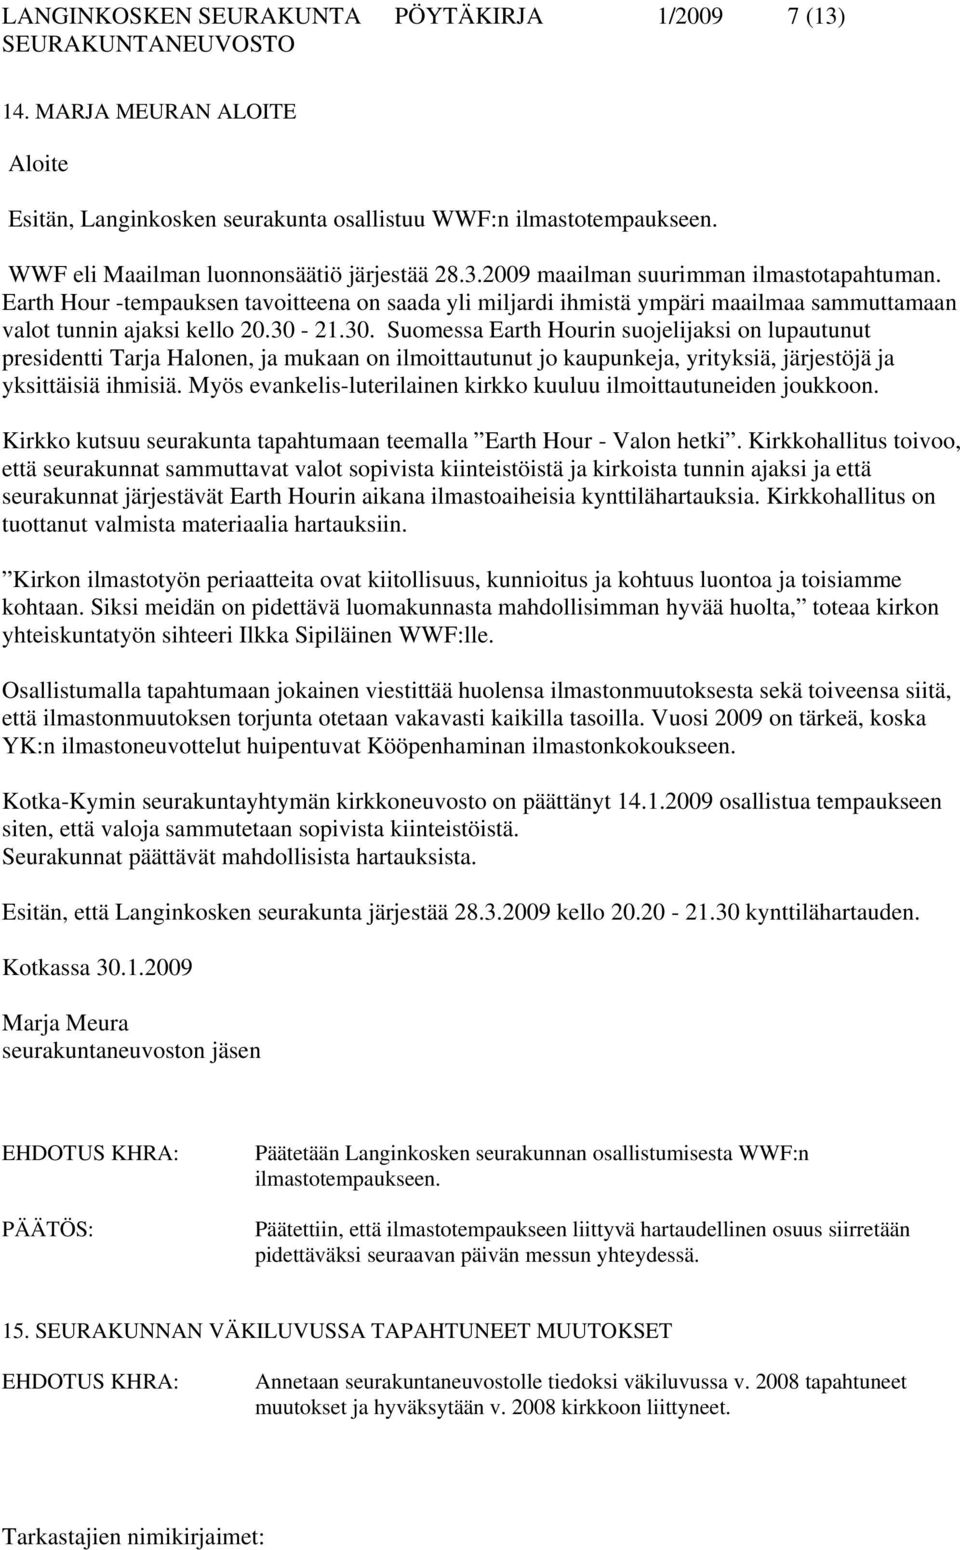 21.30. Suomessa Earth Hourin suojelijaksi on lupautunut presidentti Tarja Halonen, ja mukaan on ilmoittautunut jo kaupunkeja, yrityksiä, järjestöjä ja yksittäisiä ihmisiä.